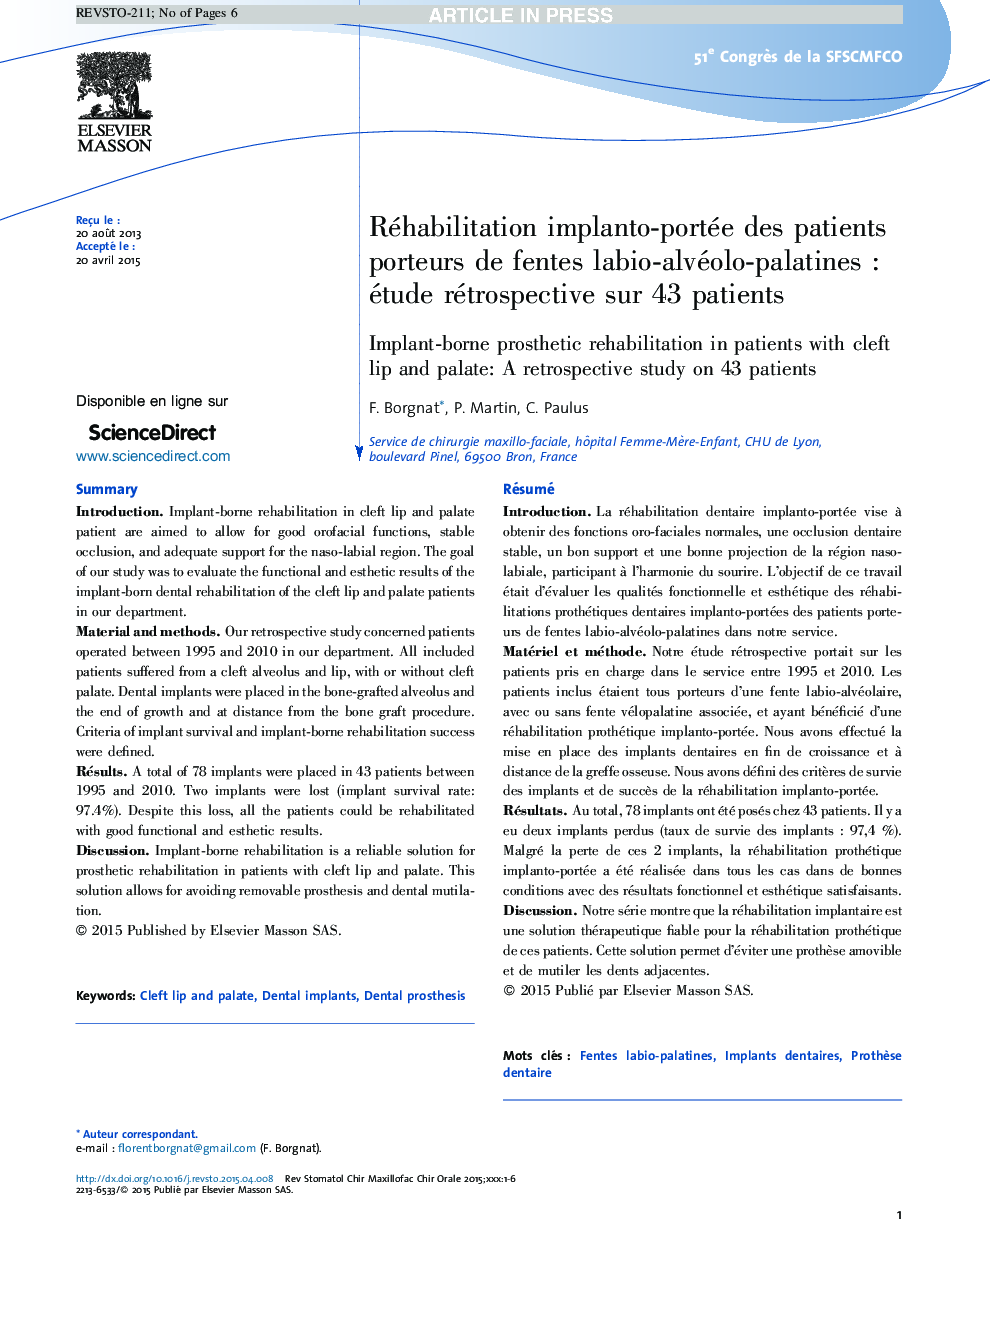 Réhabilitation implanto-portée des patients porteurs de fentes labio-alvéolo-palatinesÂ : étude rétrospective sur 43Â patients